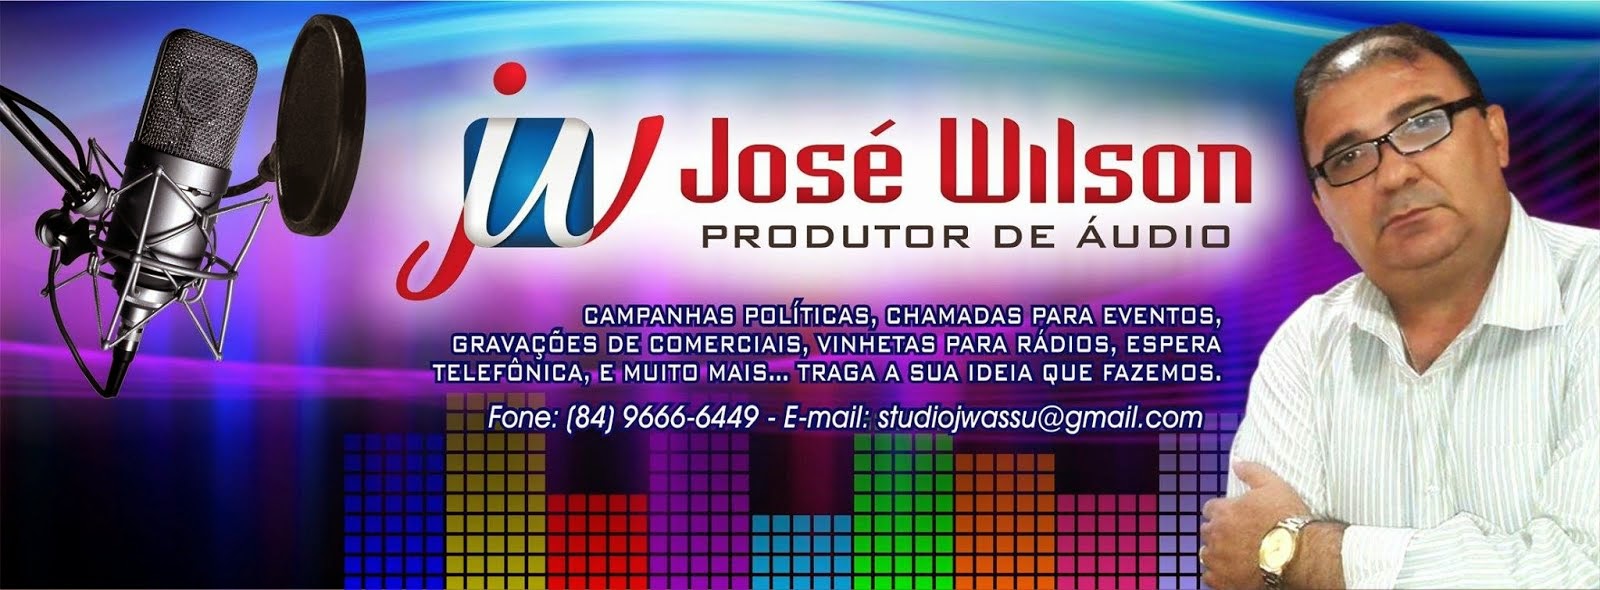 José Wilson Produtor de Áudio